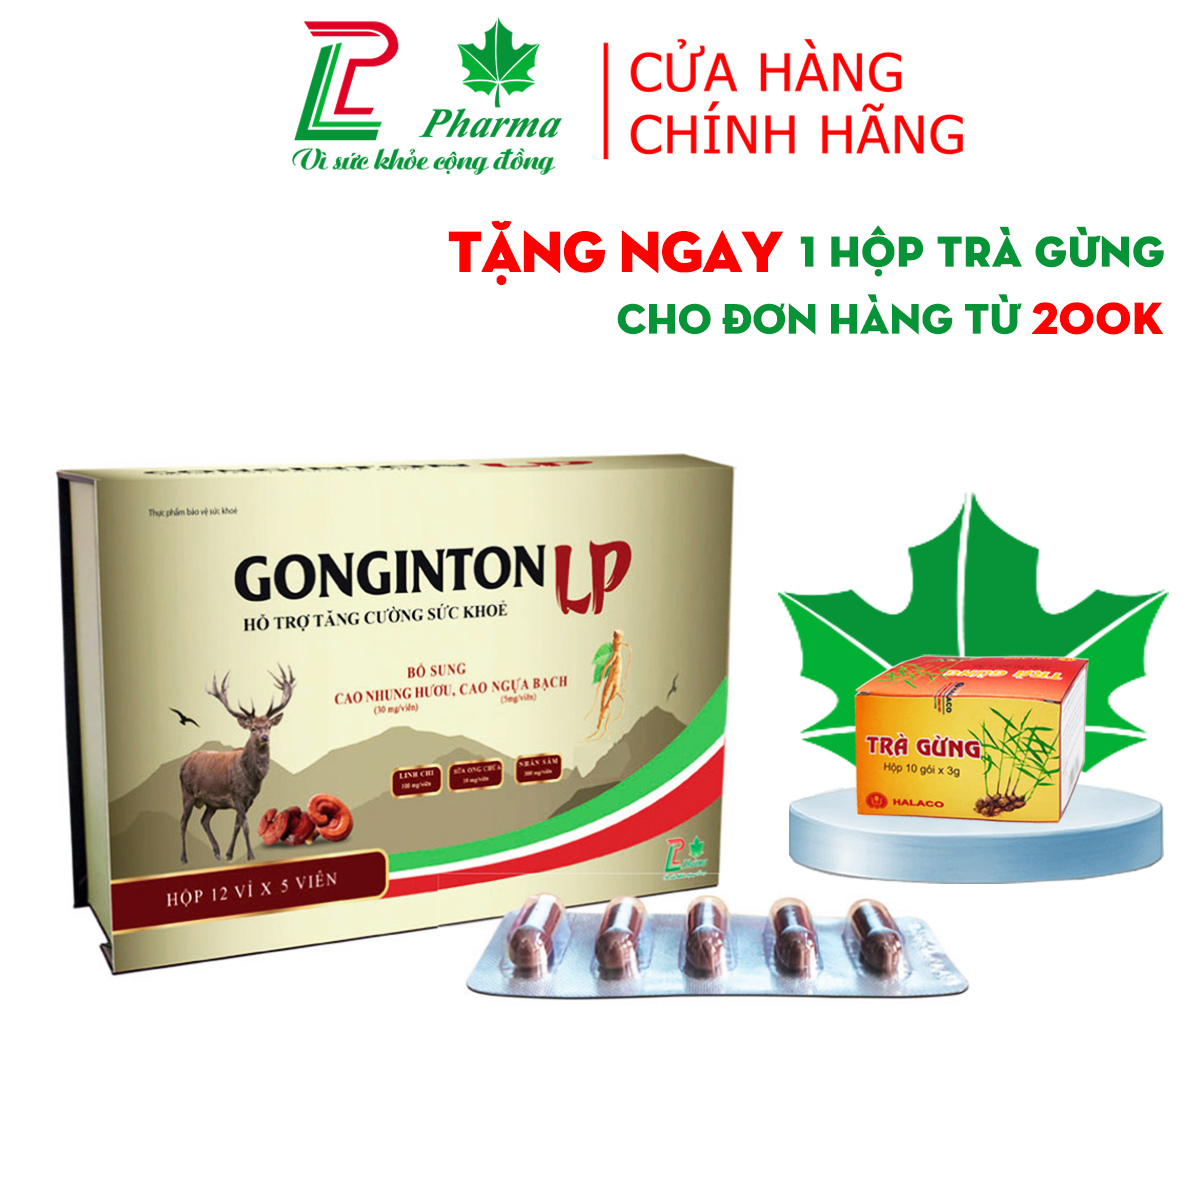 Viên uống tăng cường sức đề kháng Gonginton LP Pharma - thành phần nhân sâm